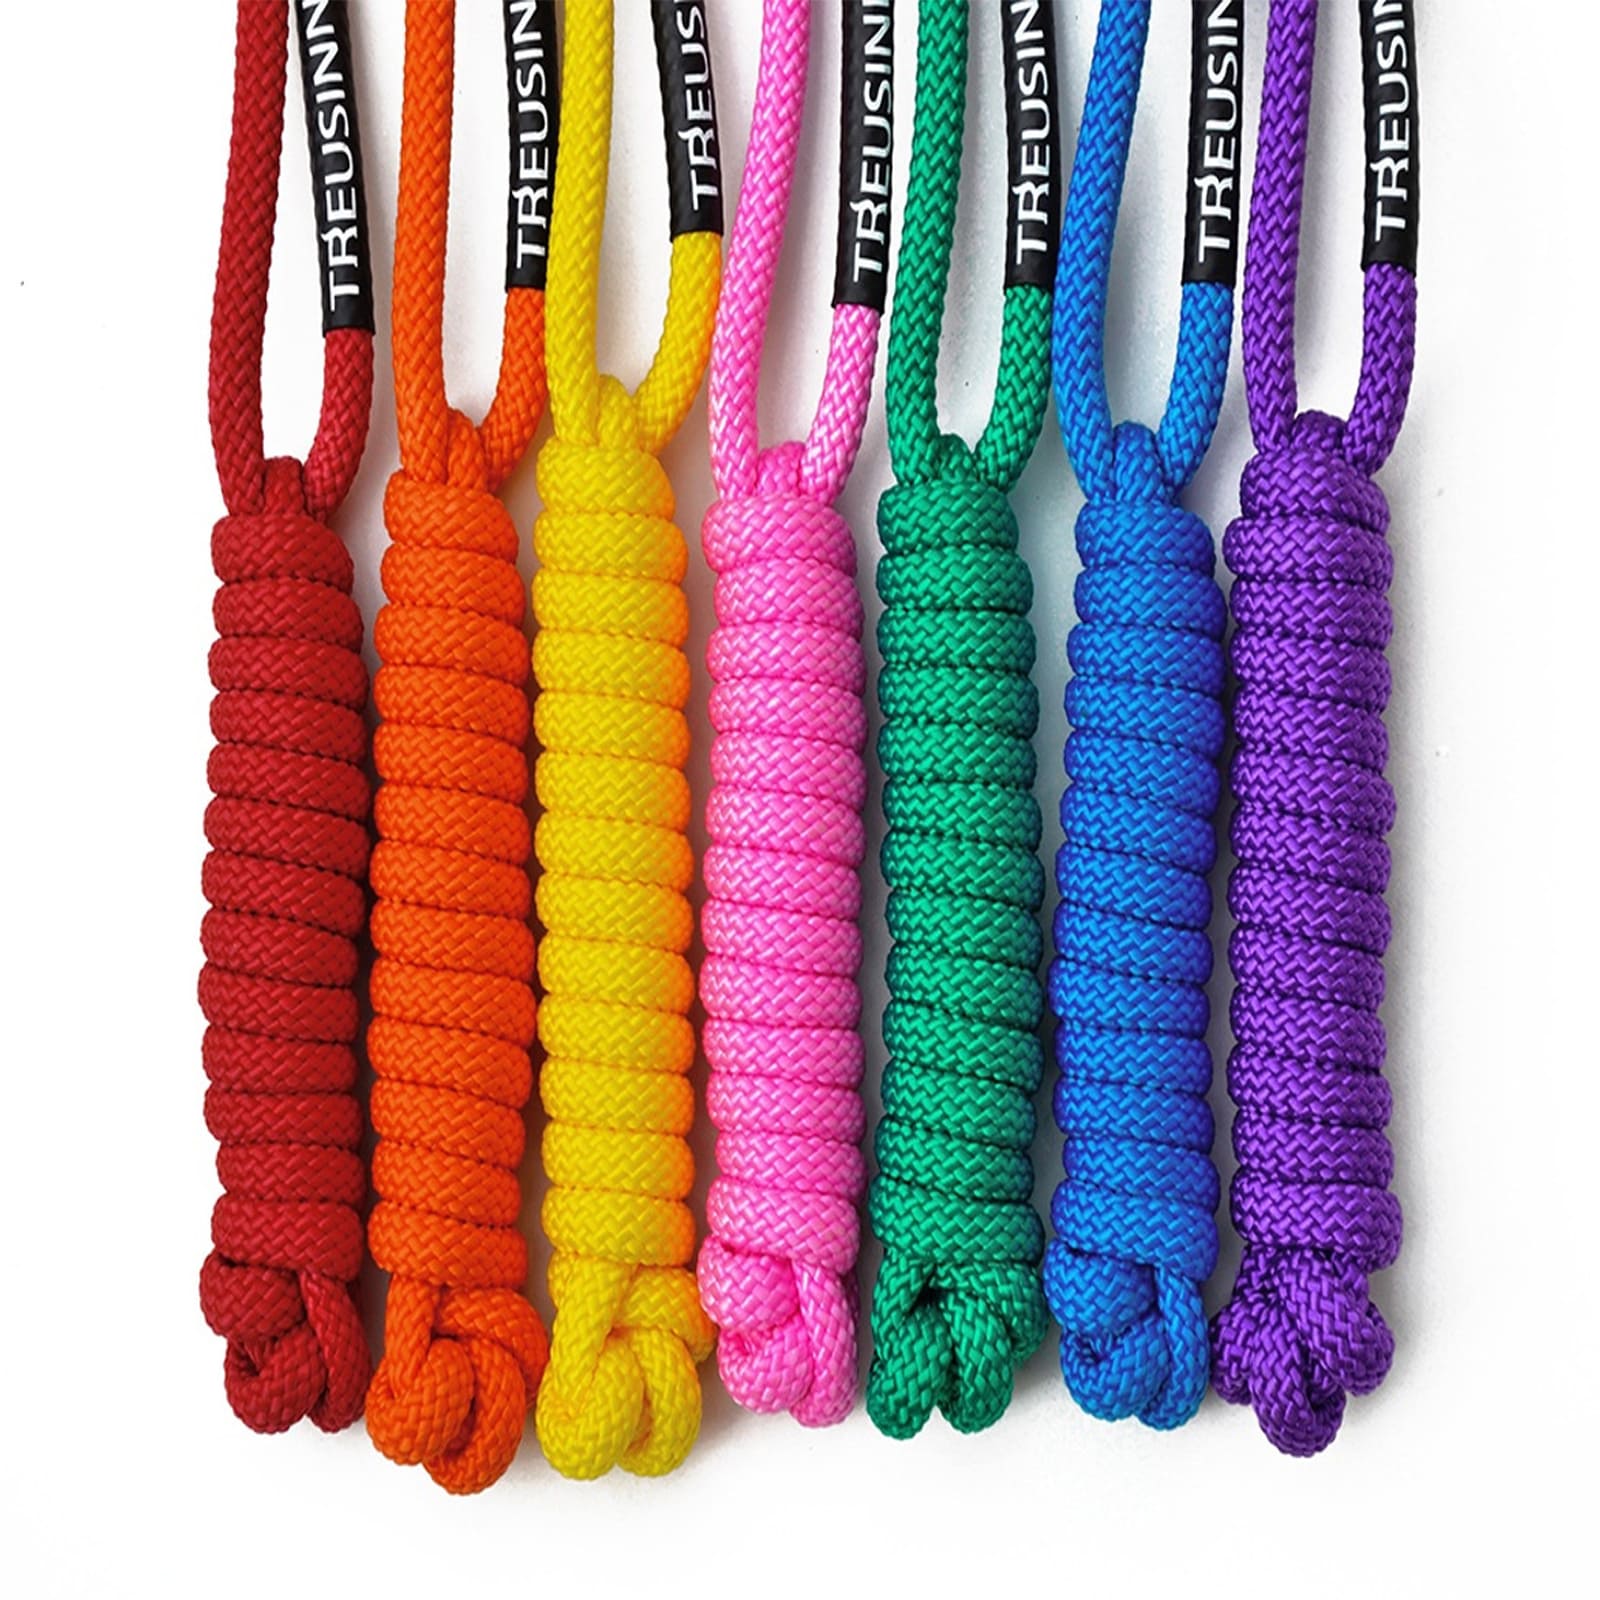 Spielzeug aus Tau in verschiedenen Farben